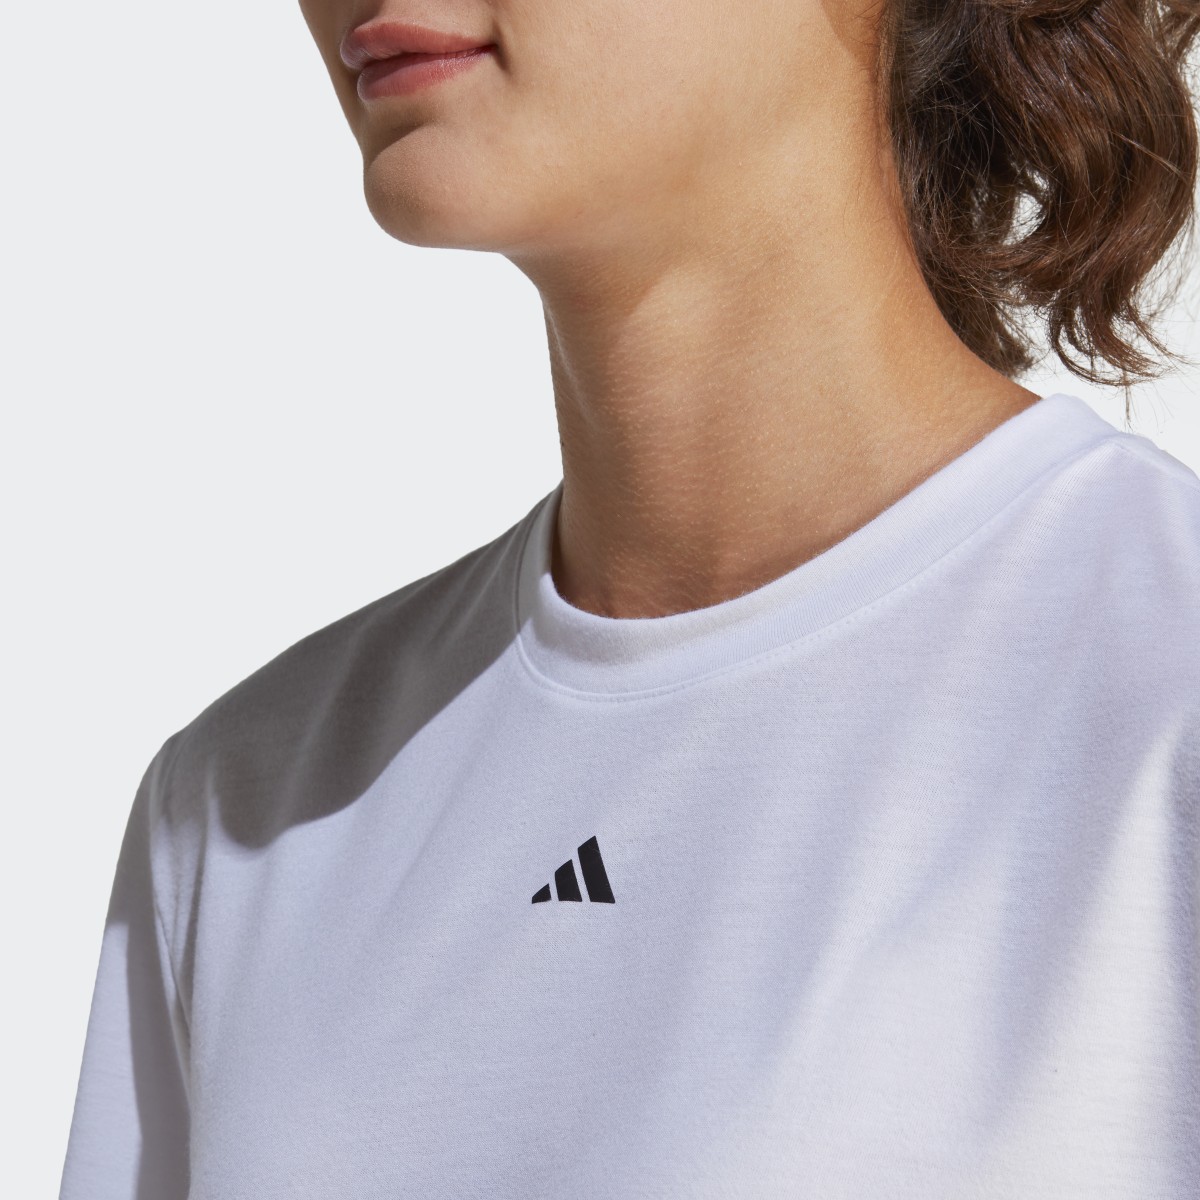 Adidas T-shirt Studio. 6